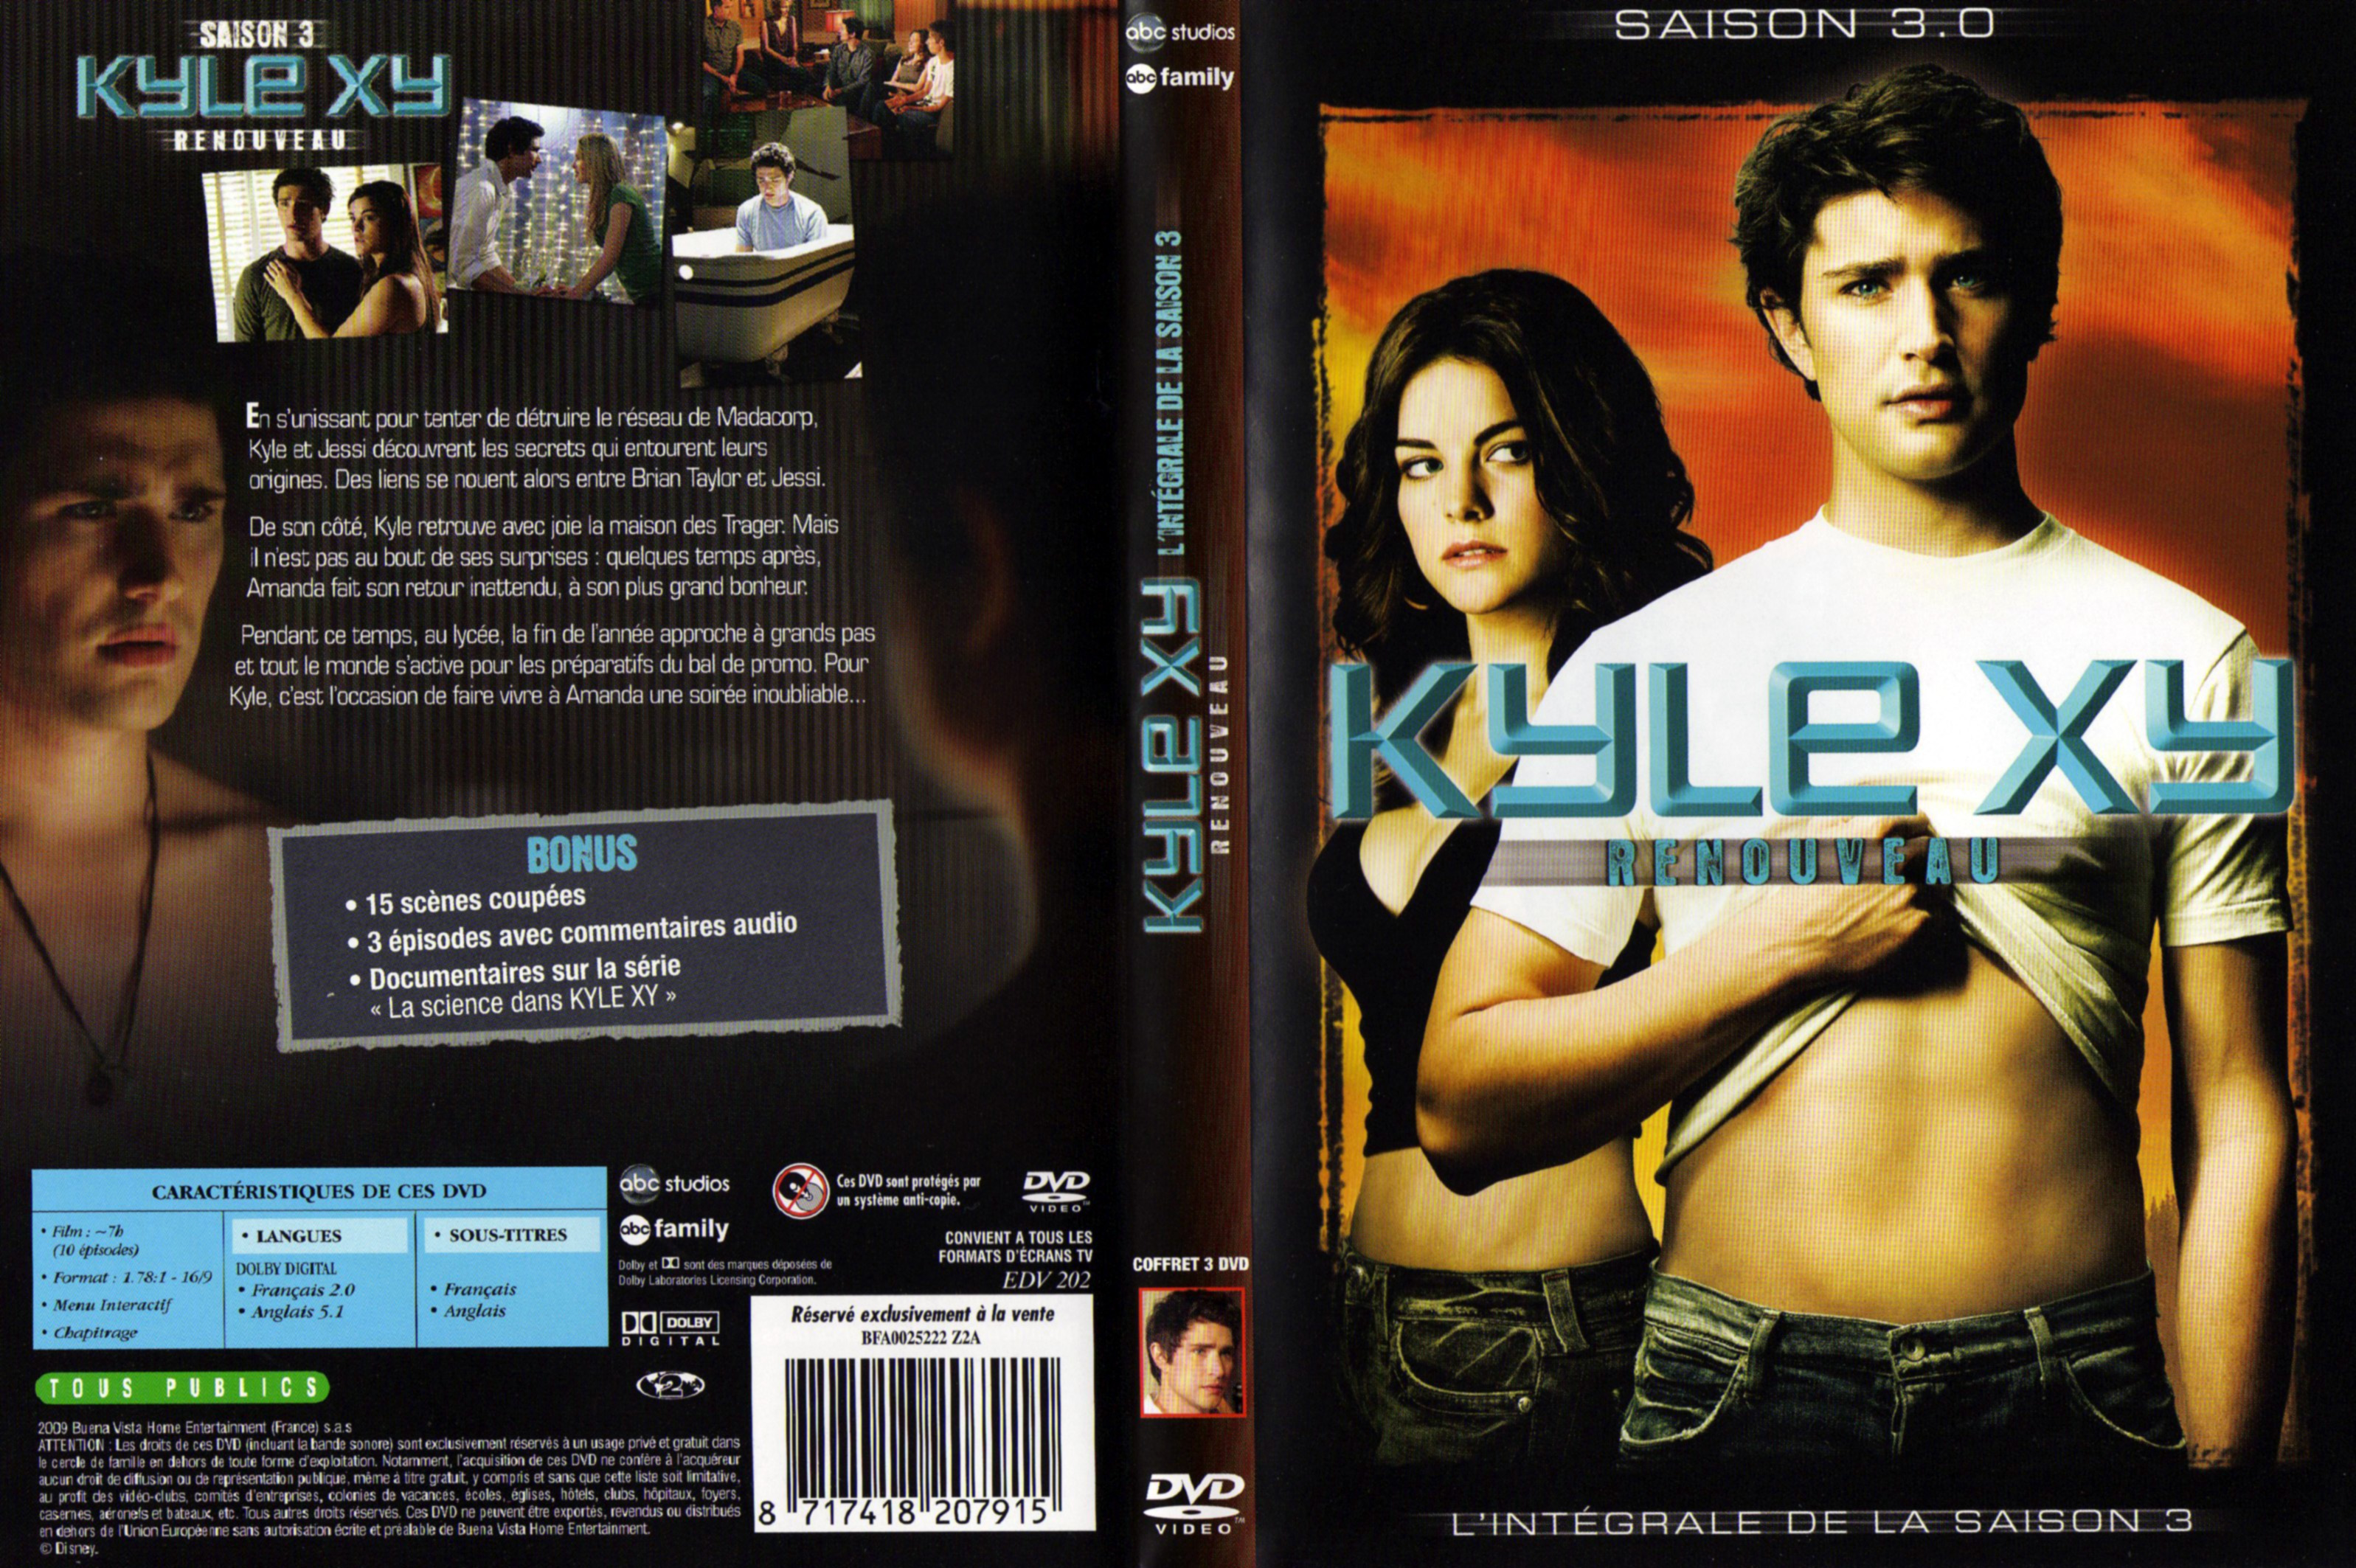 Jaquette DVD Kyle XY Saison 3 COFFRET